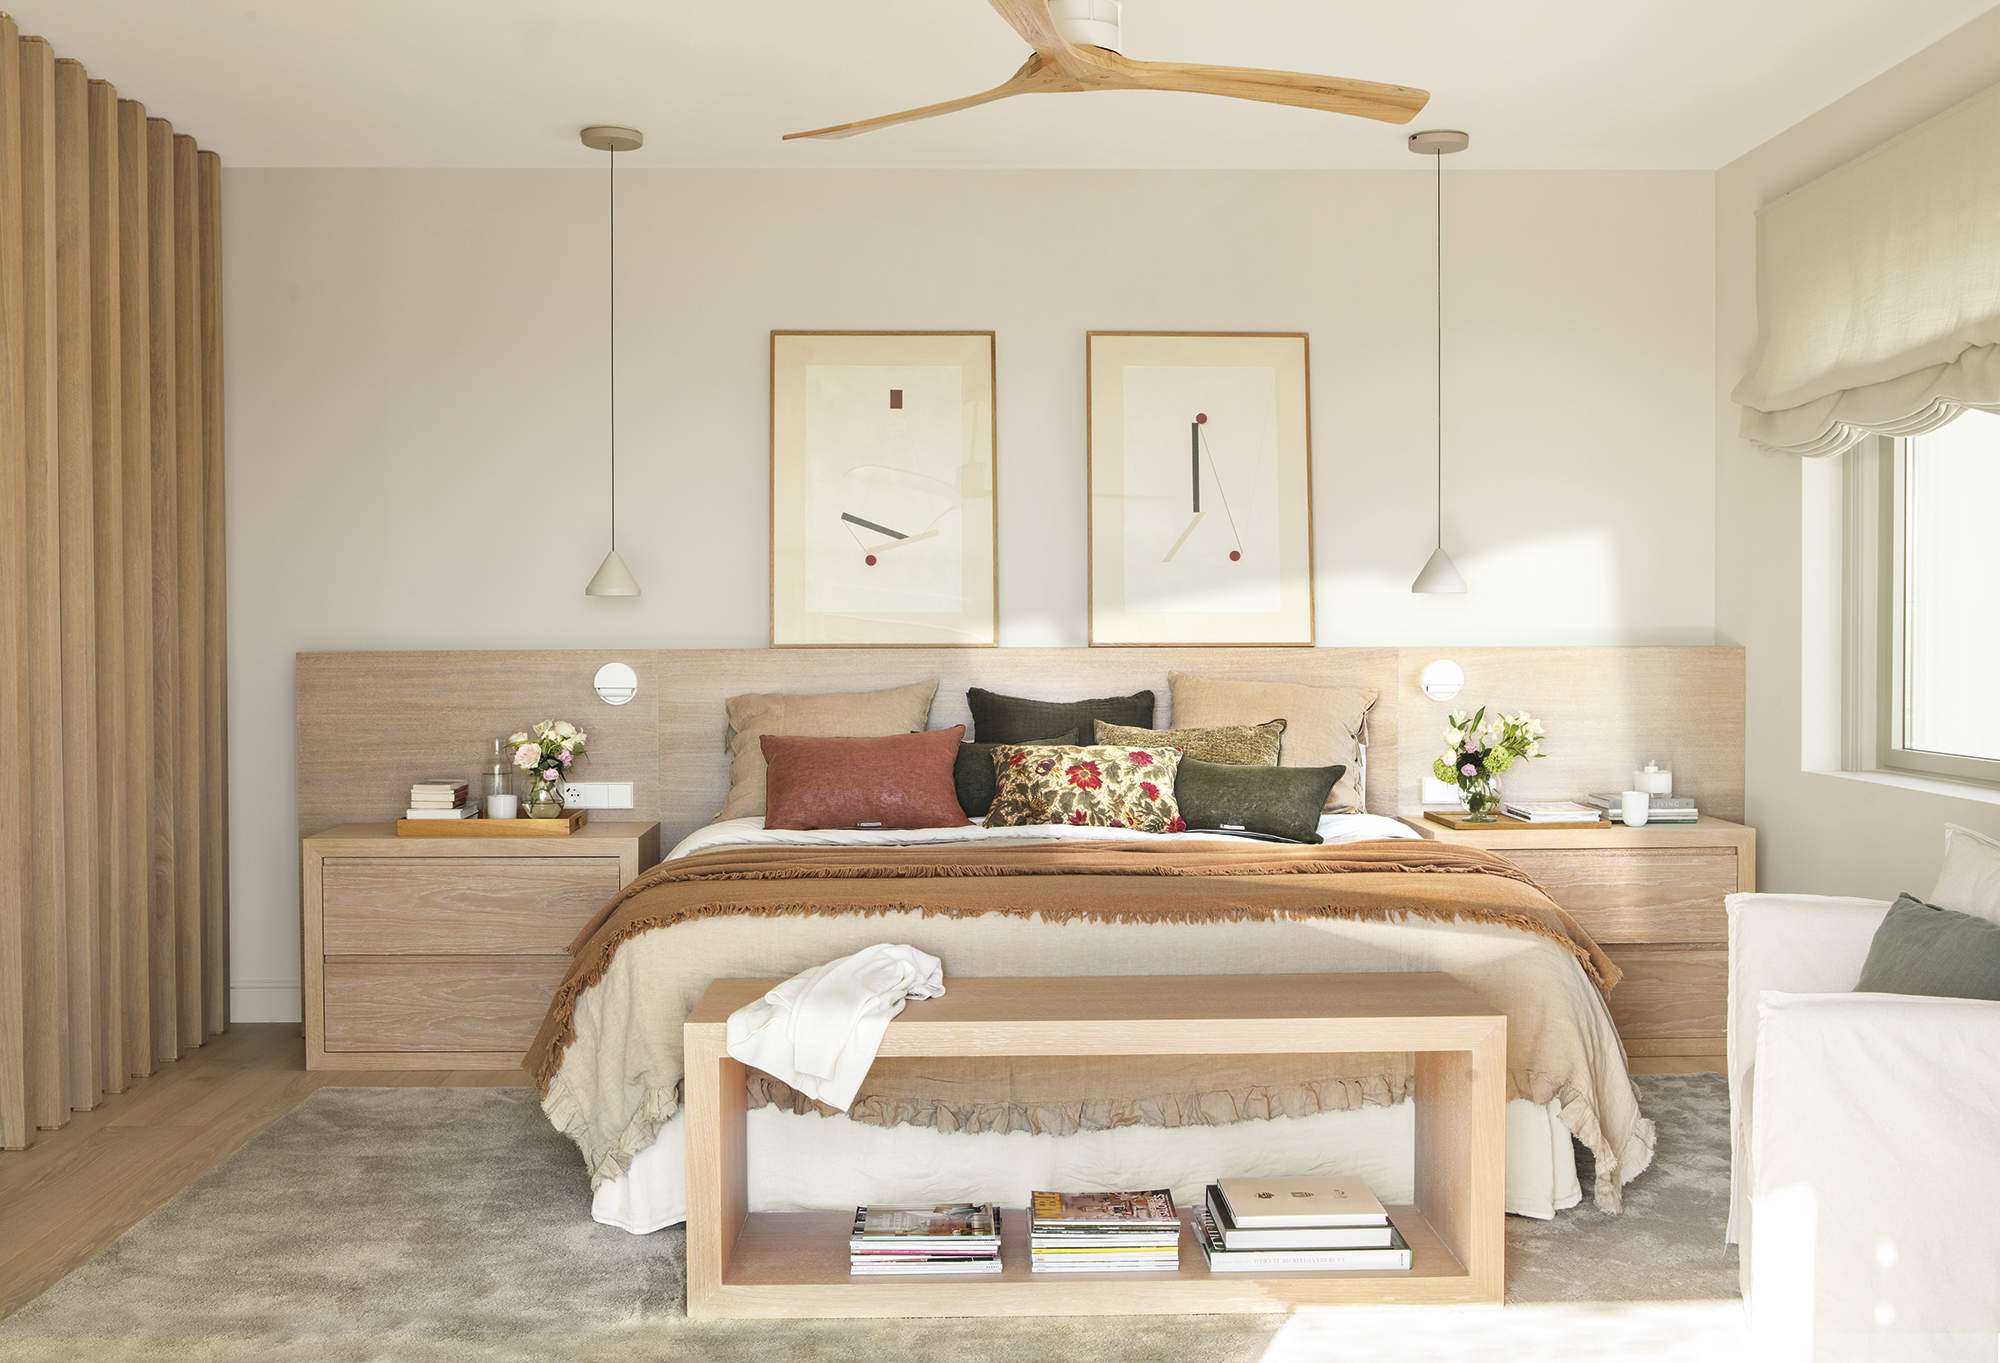 dormitorio principal con cabecero de obra, cuadros, ropa de cama beige y marrón, separador de madera y alfombra